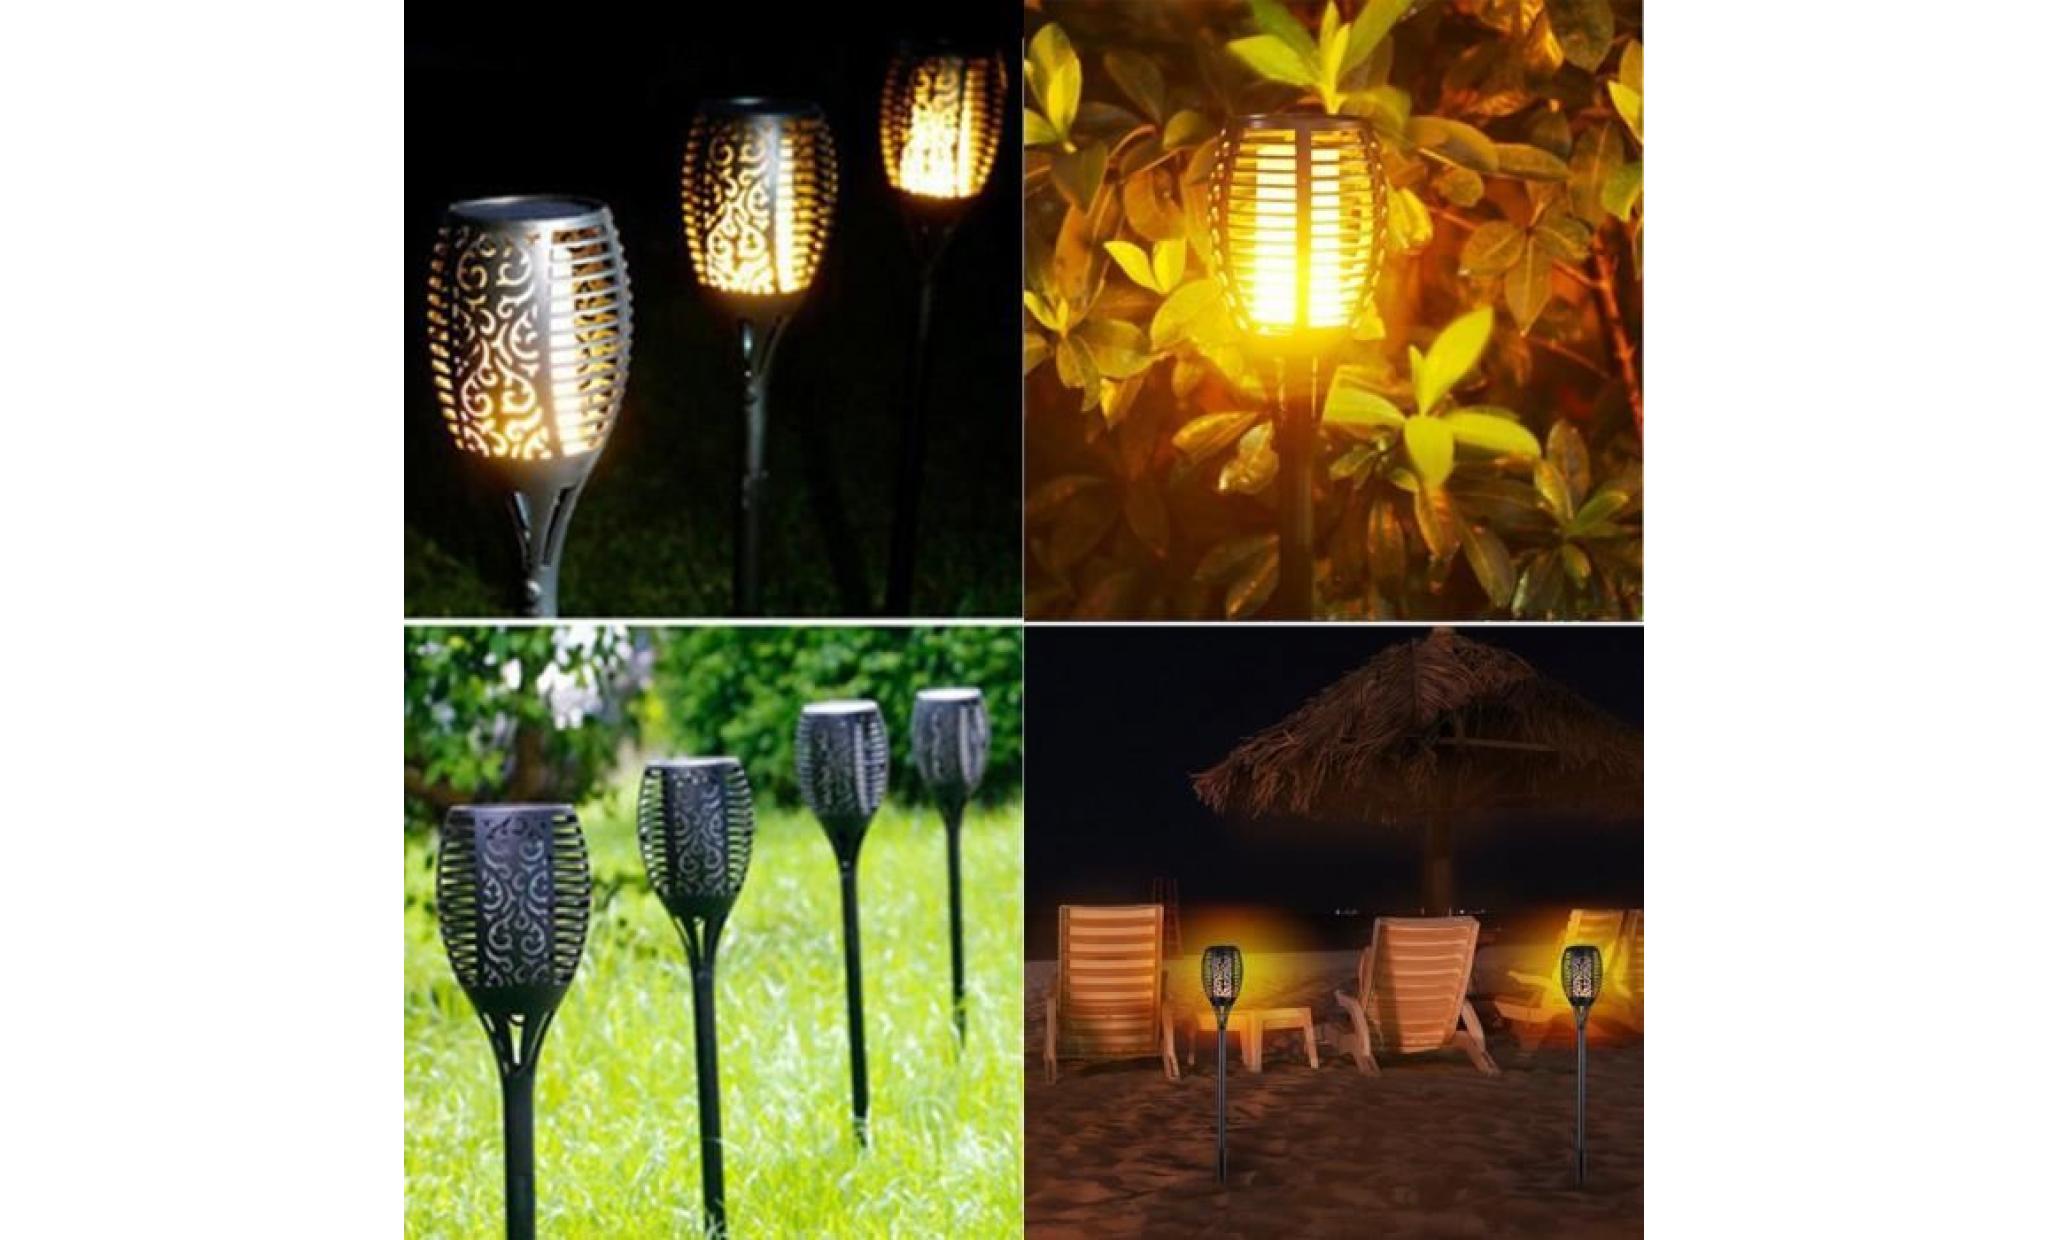 2 pcs lampe de jardin solaire lampe led décorative feu imperméable résistante chaleur eclairage exterieur decoration pour jardin